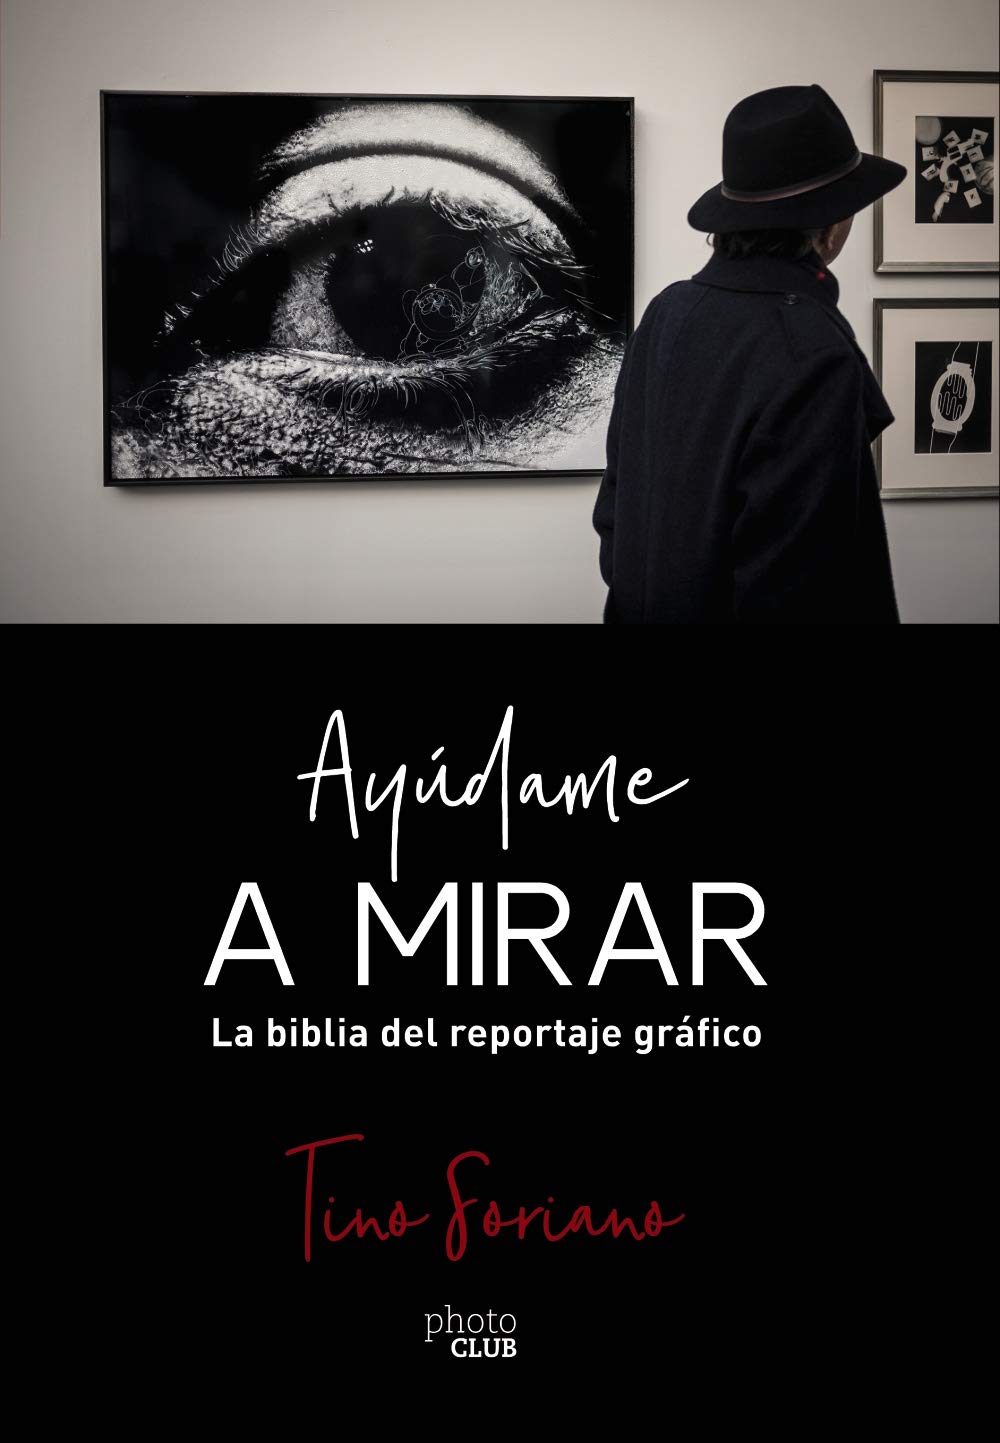 Tino Soriano: “El fotógrafo español siempre ha tenido que picar en la puerta de los Pirineos” 1